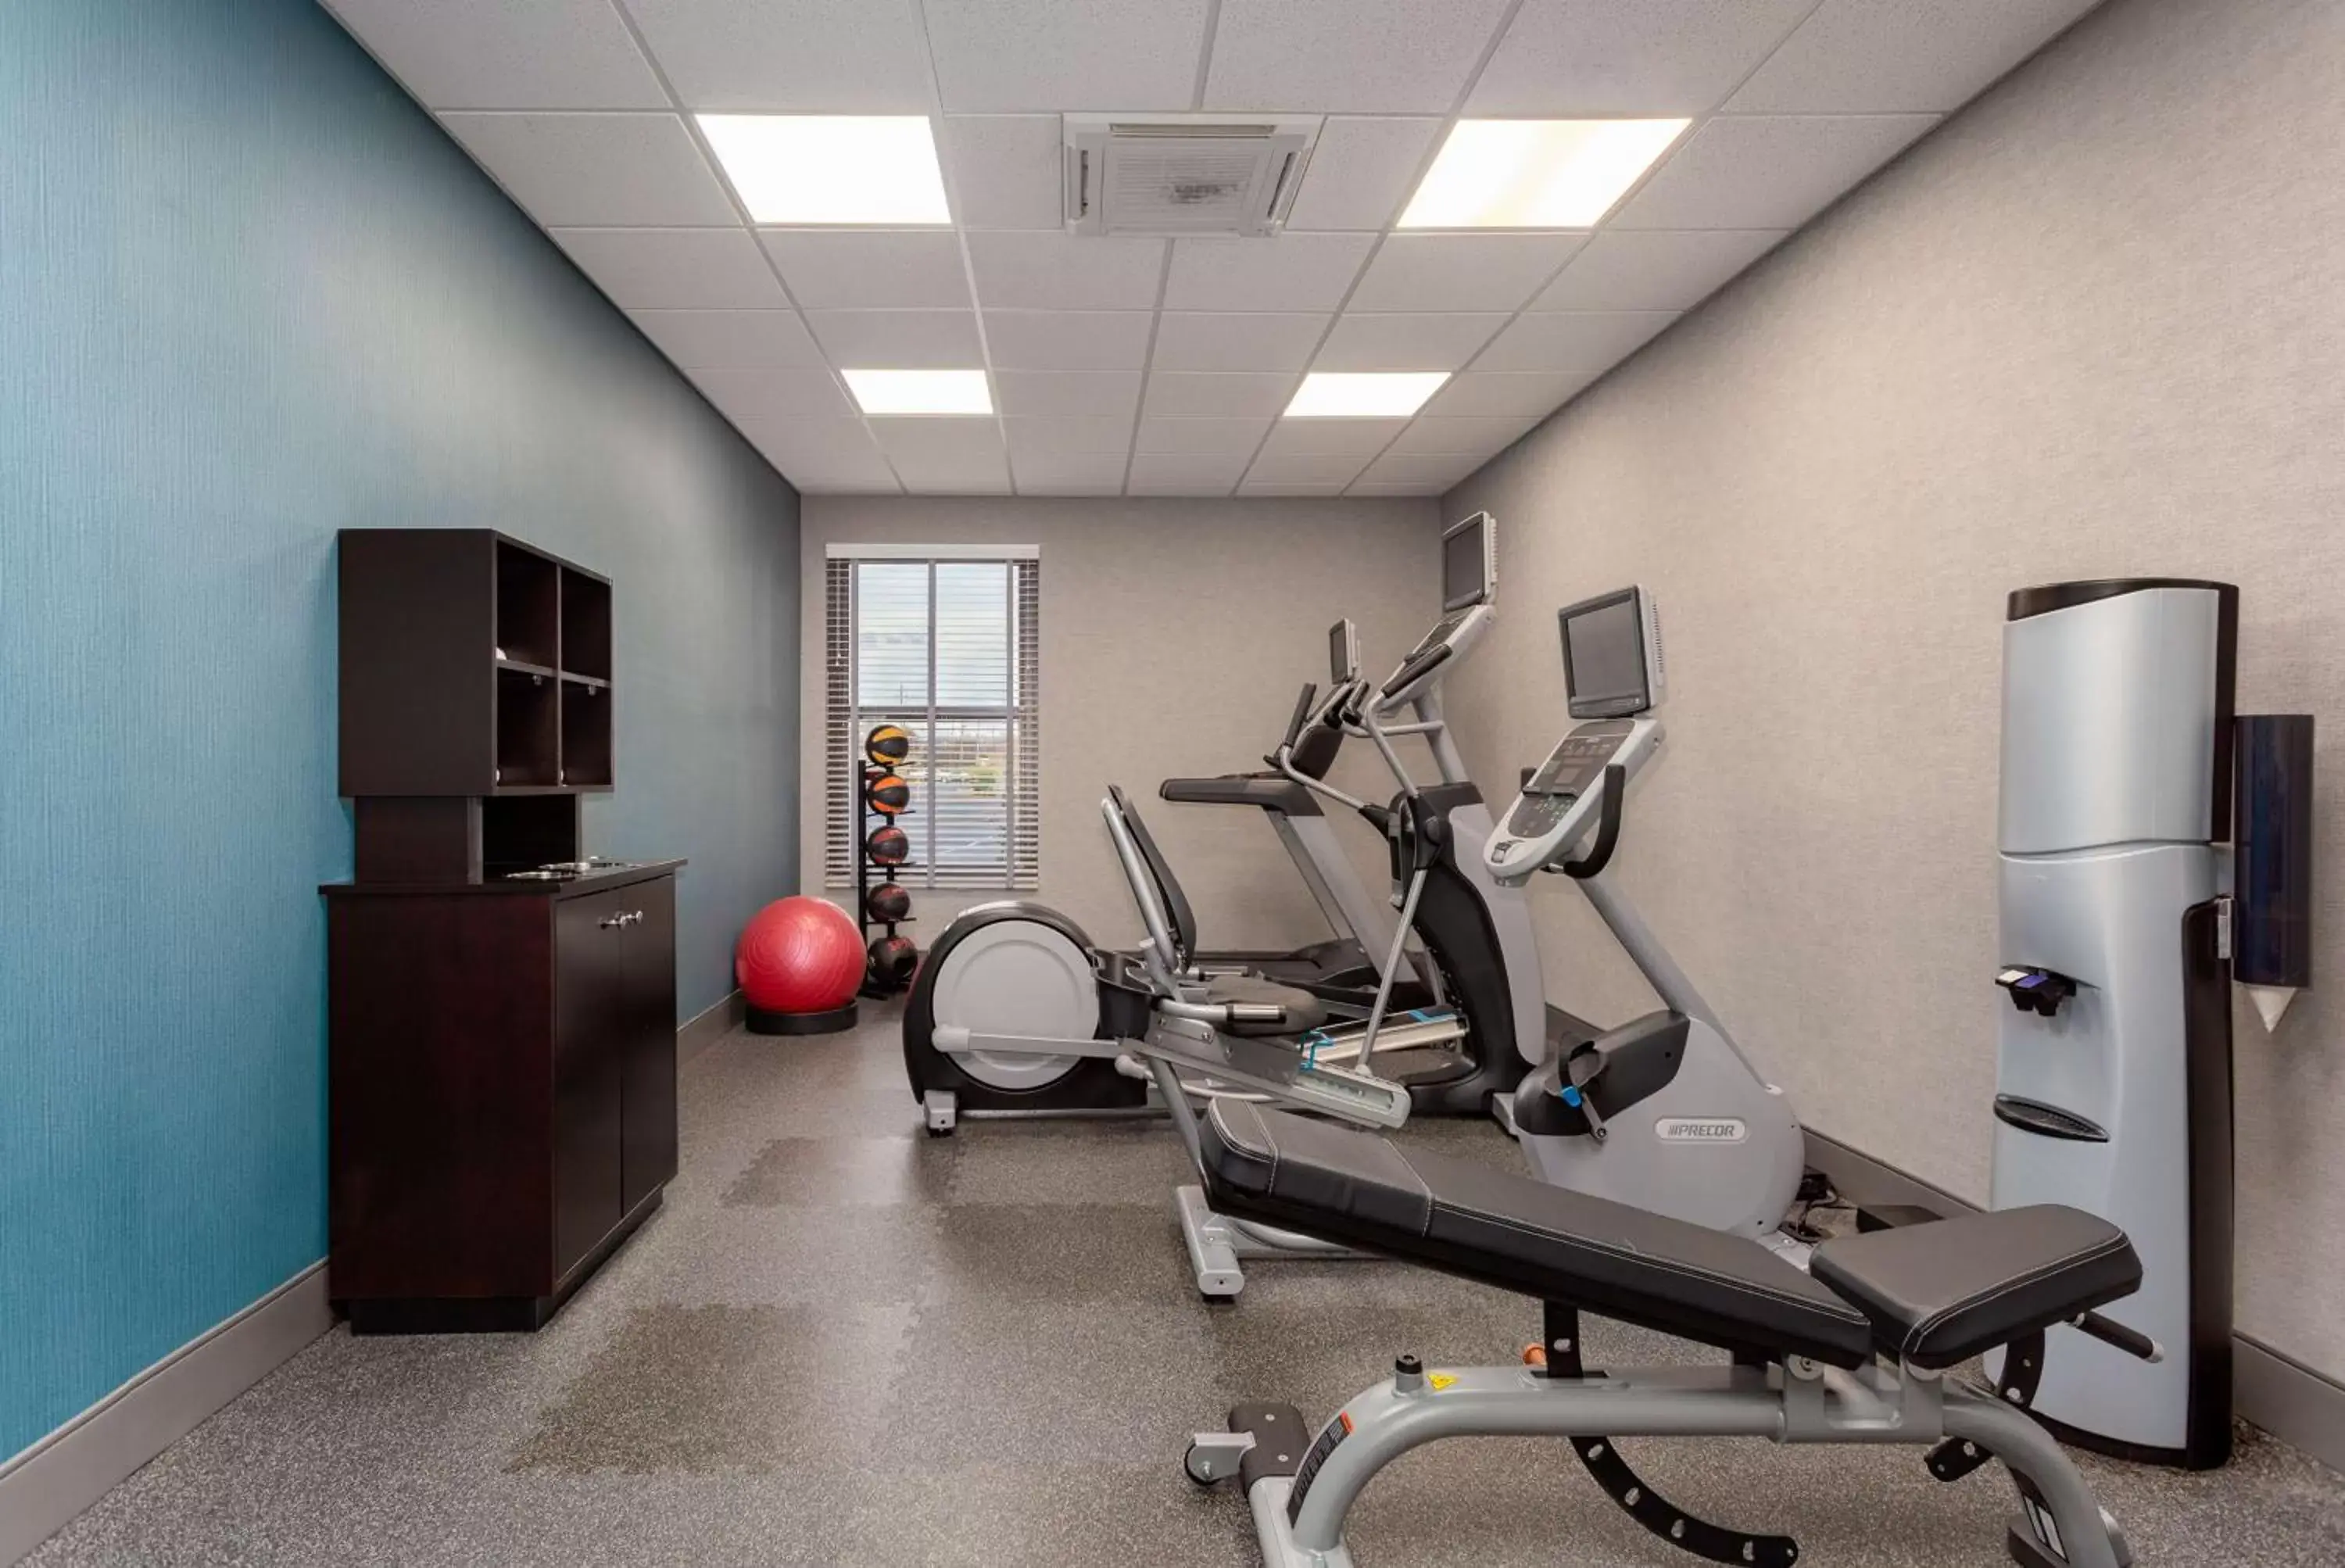 Fitness centre/facilities, Fitness Center/Facilities in Hampton Inn Bristol